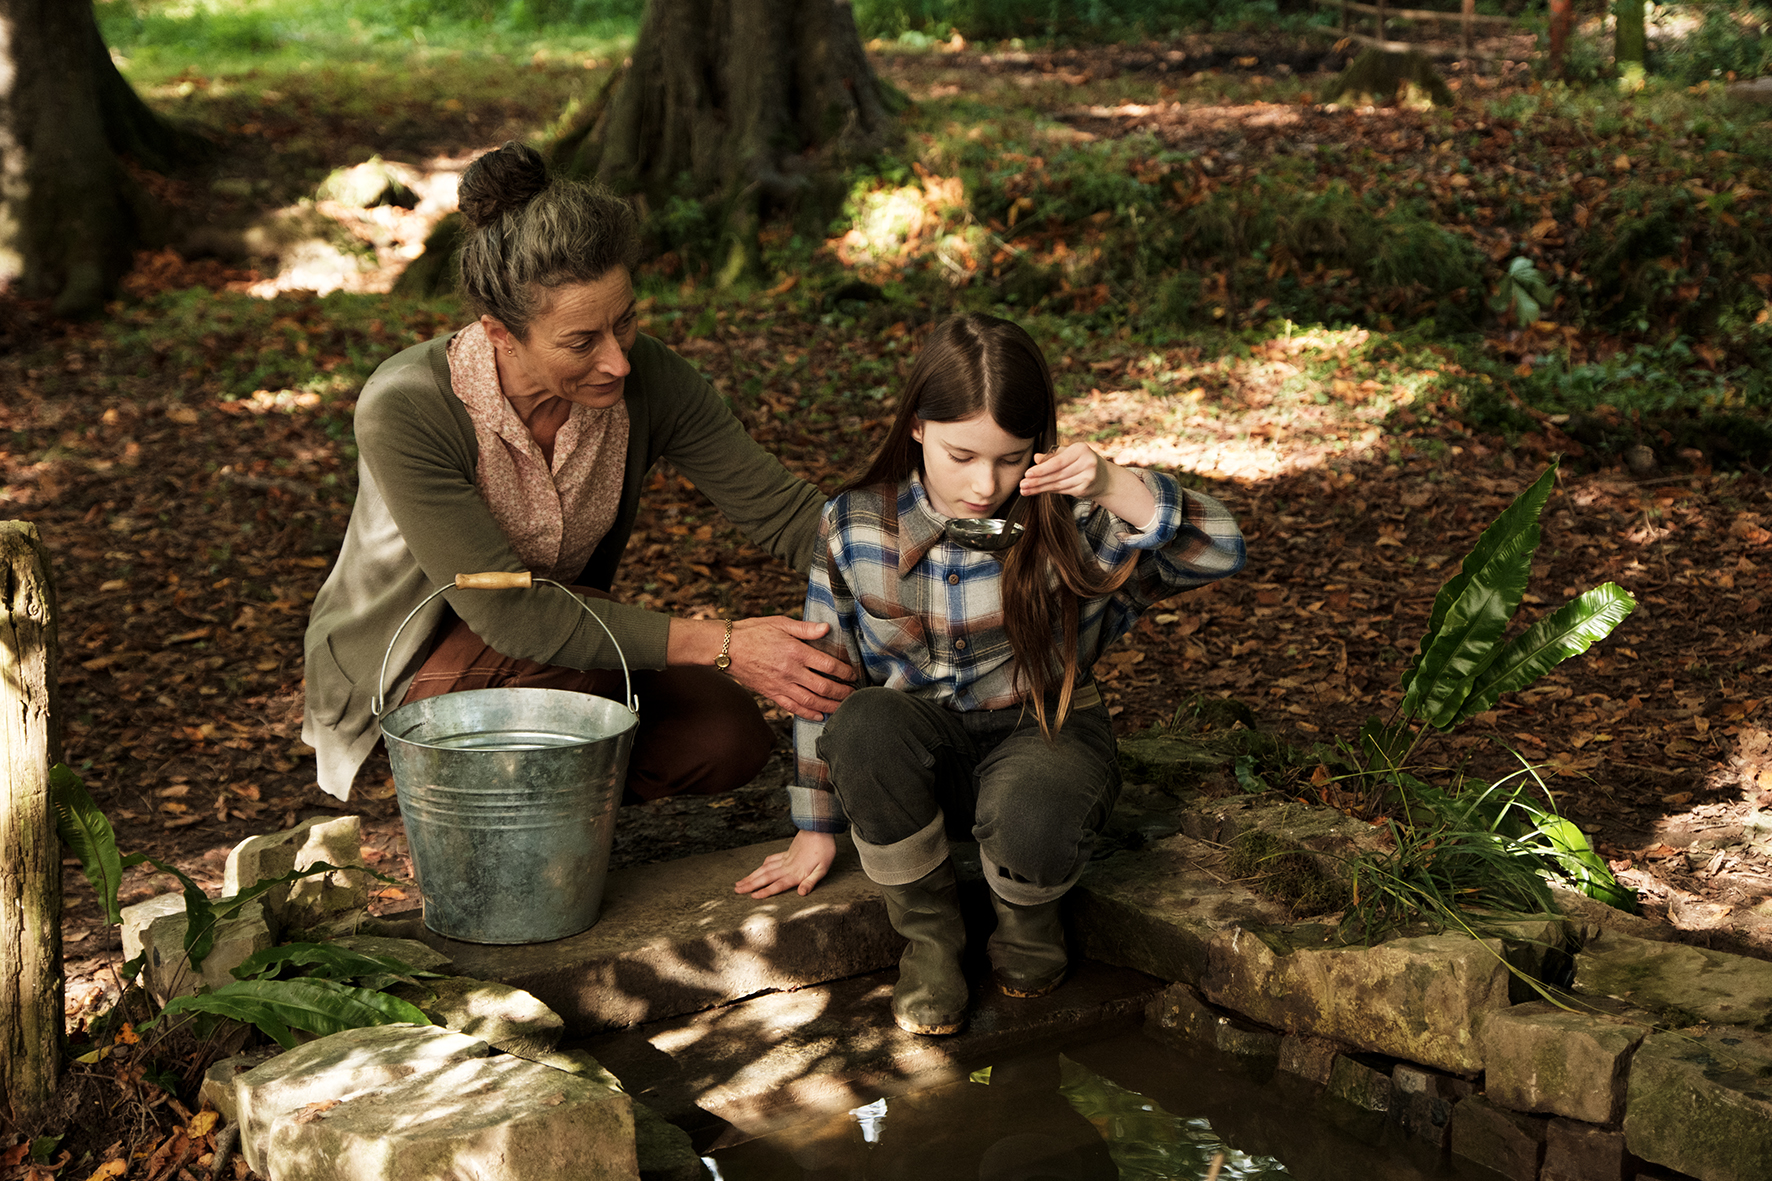 Neu gewonnenes Glück: Eibhlín Cinnsealach (Carrie Crowley) erledigt gemeinsam mit ihrer Pflegetochter Cáit (Catherine Clinch) die täglichen Aufgaben auf einer Farm. 